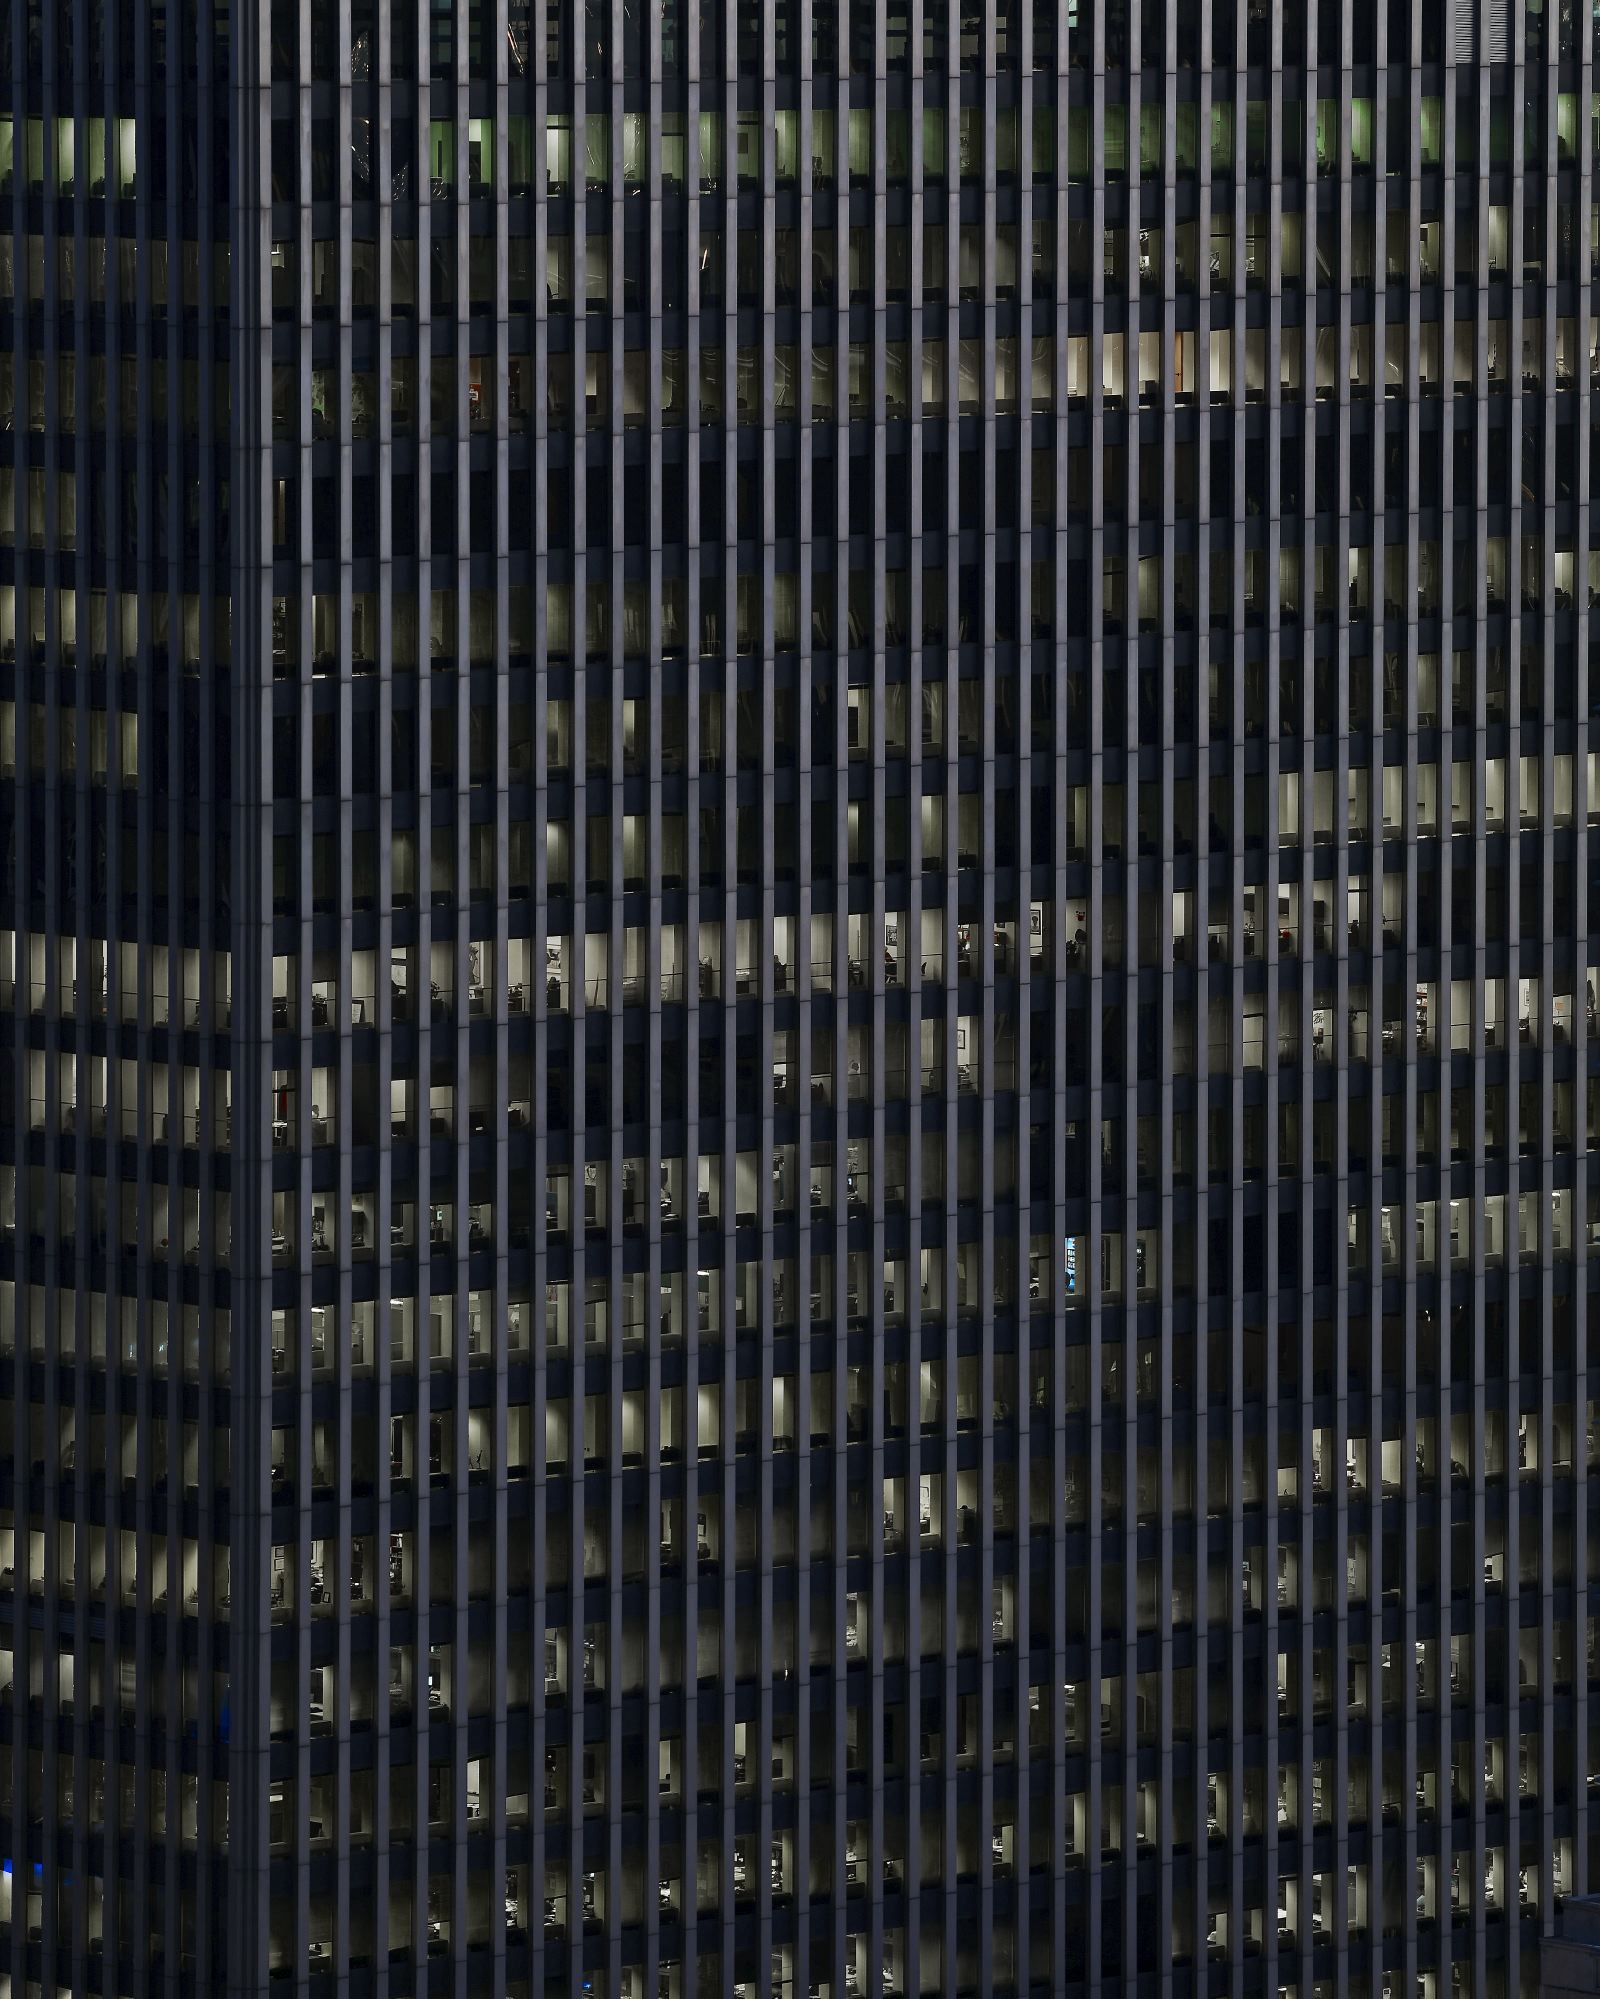 srie Transparent City - tc106, 2007